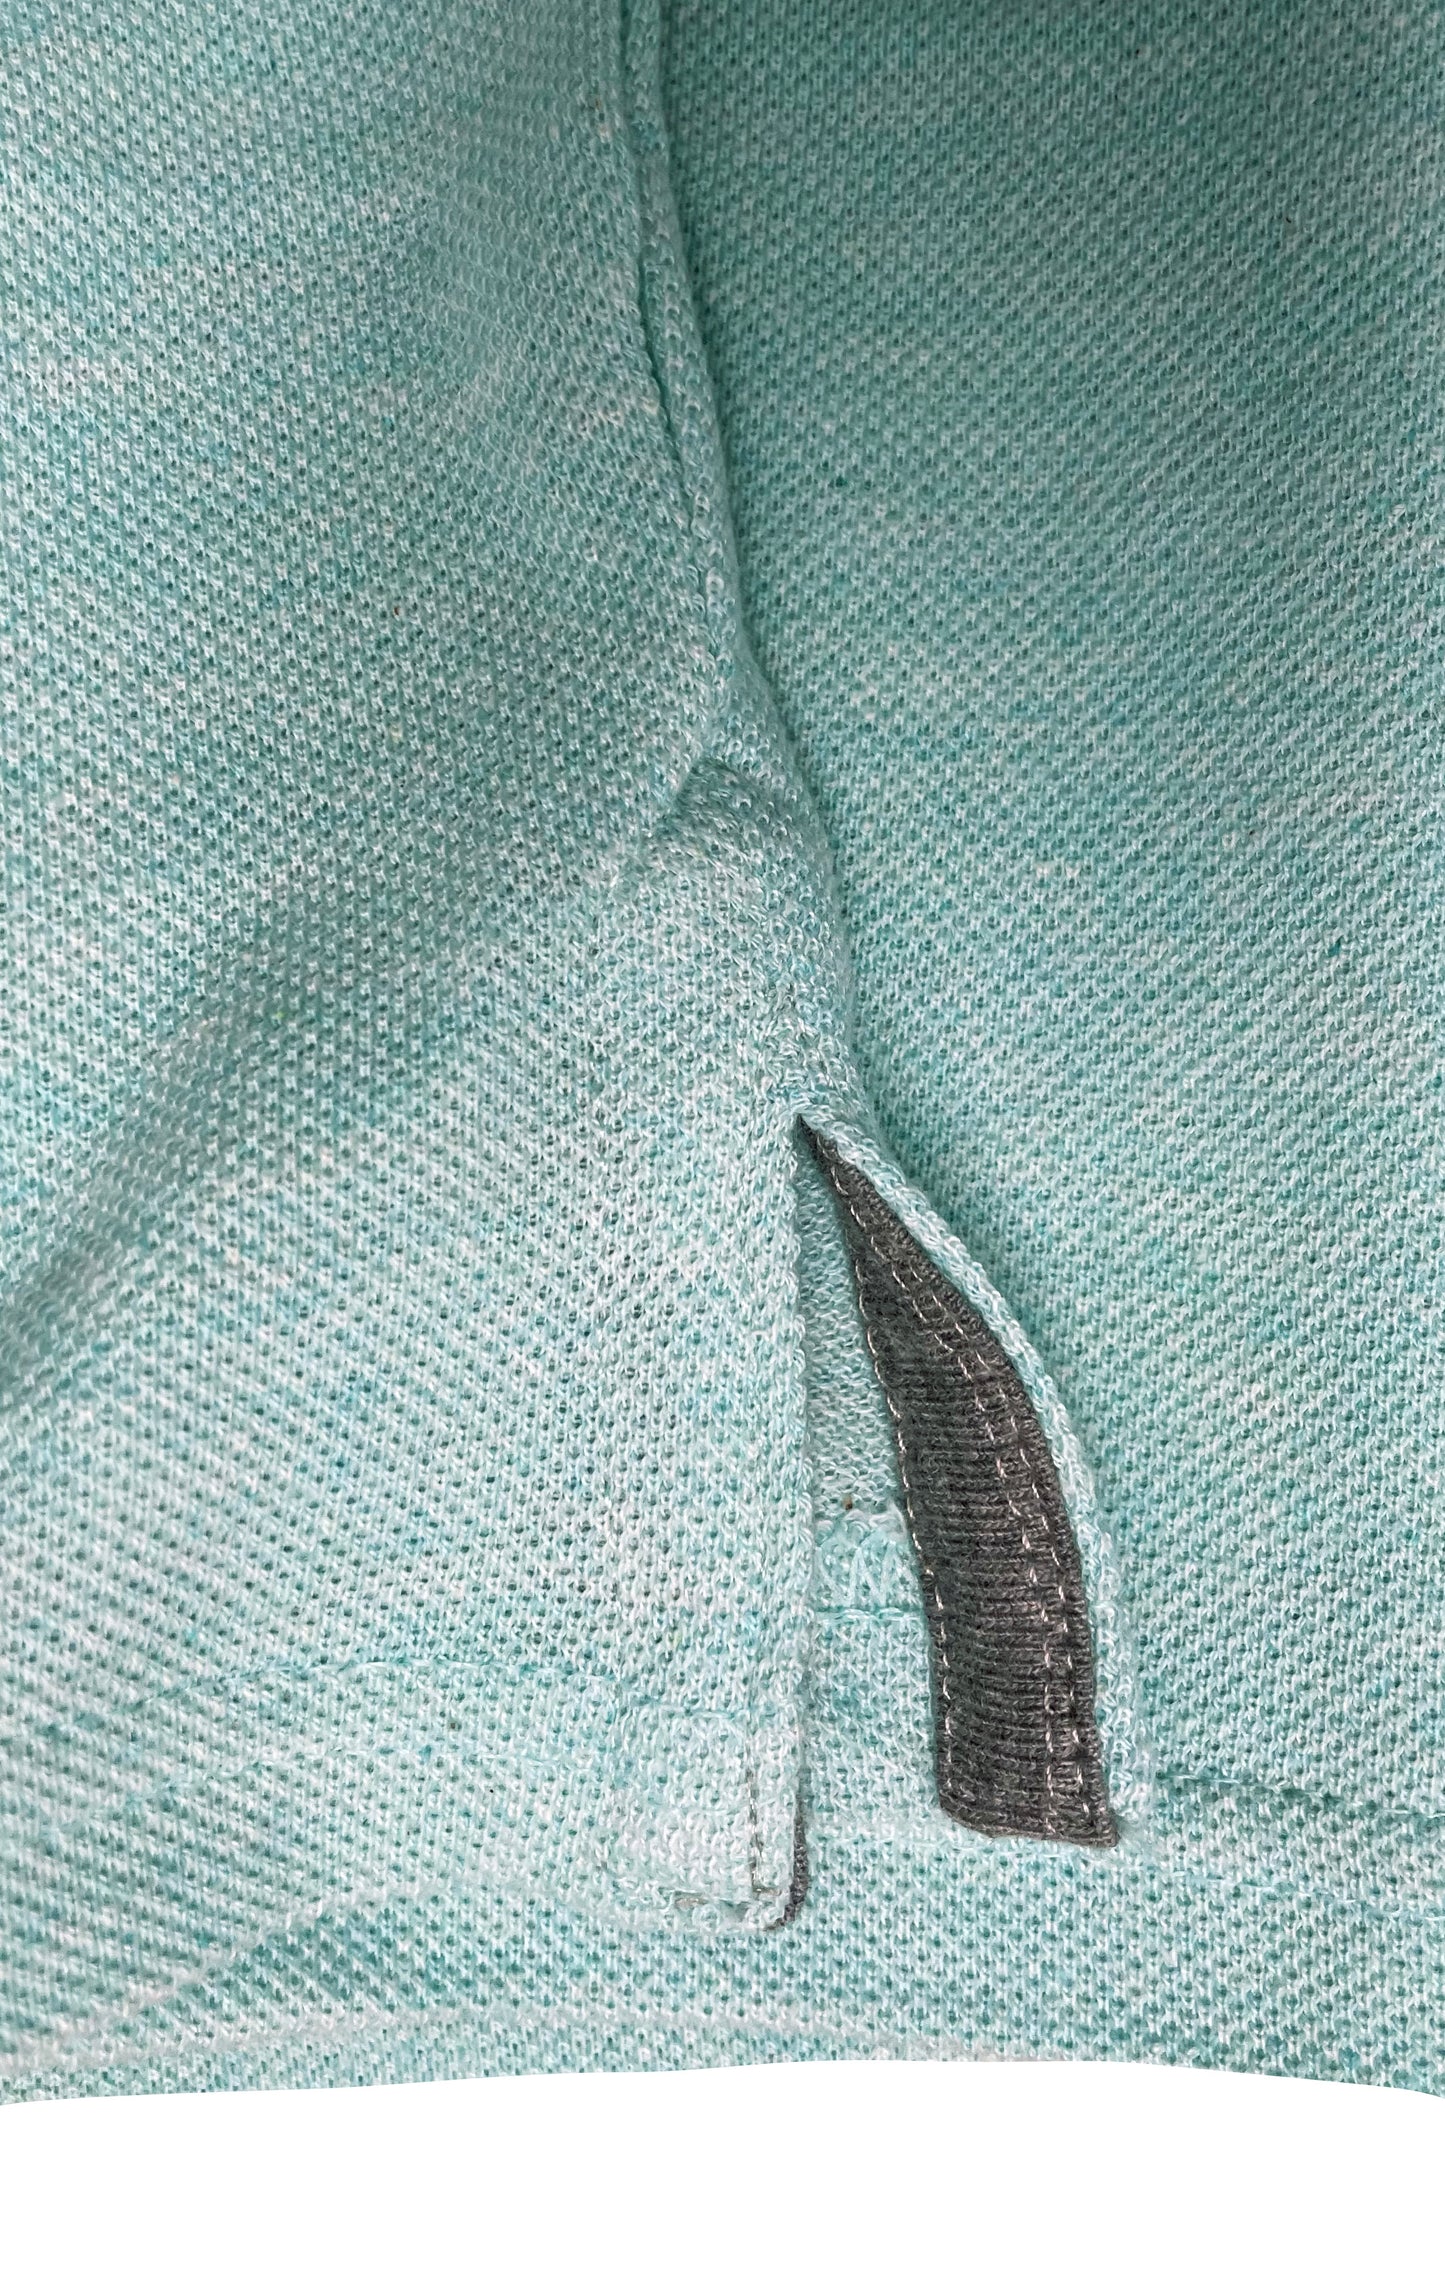 Zigster Men's Short Sleeve Polo shirt Light Cotton blend woven material Pink and Green